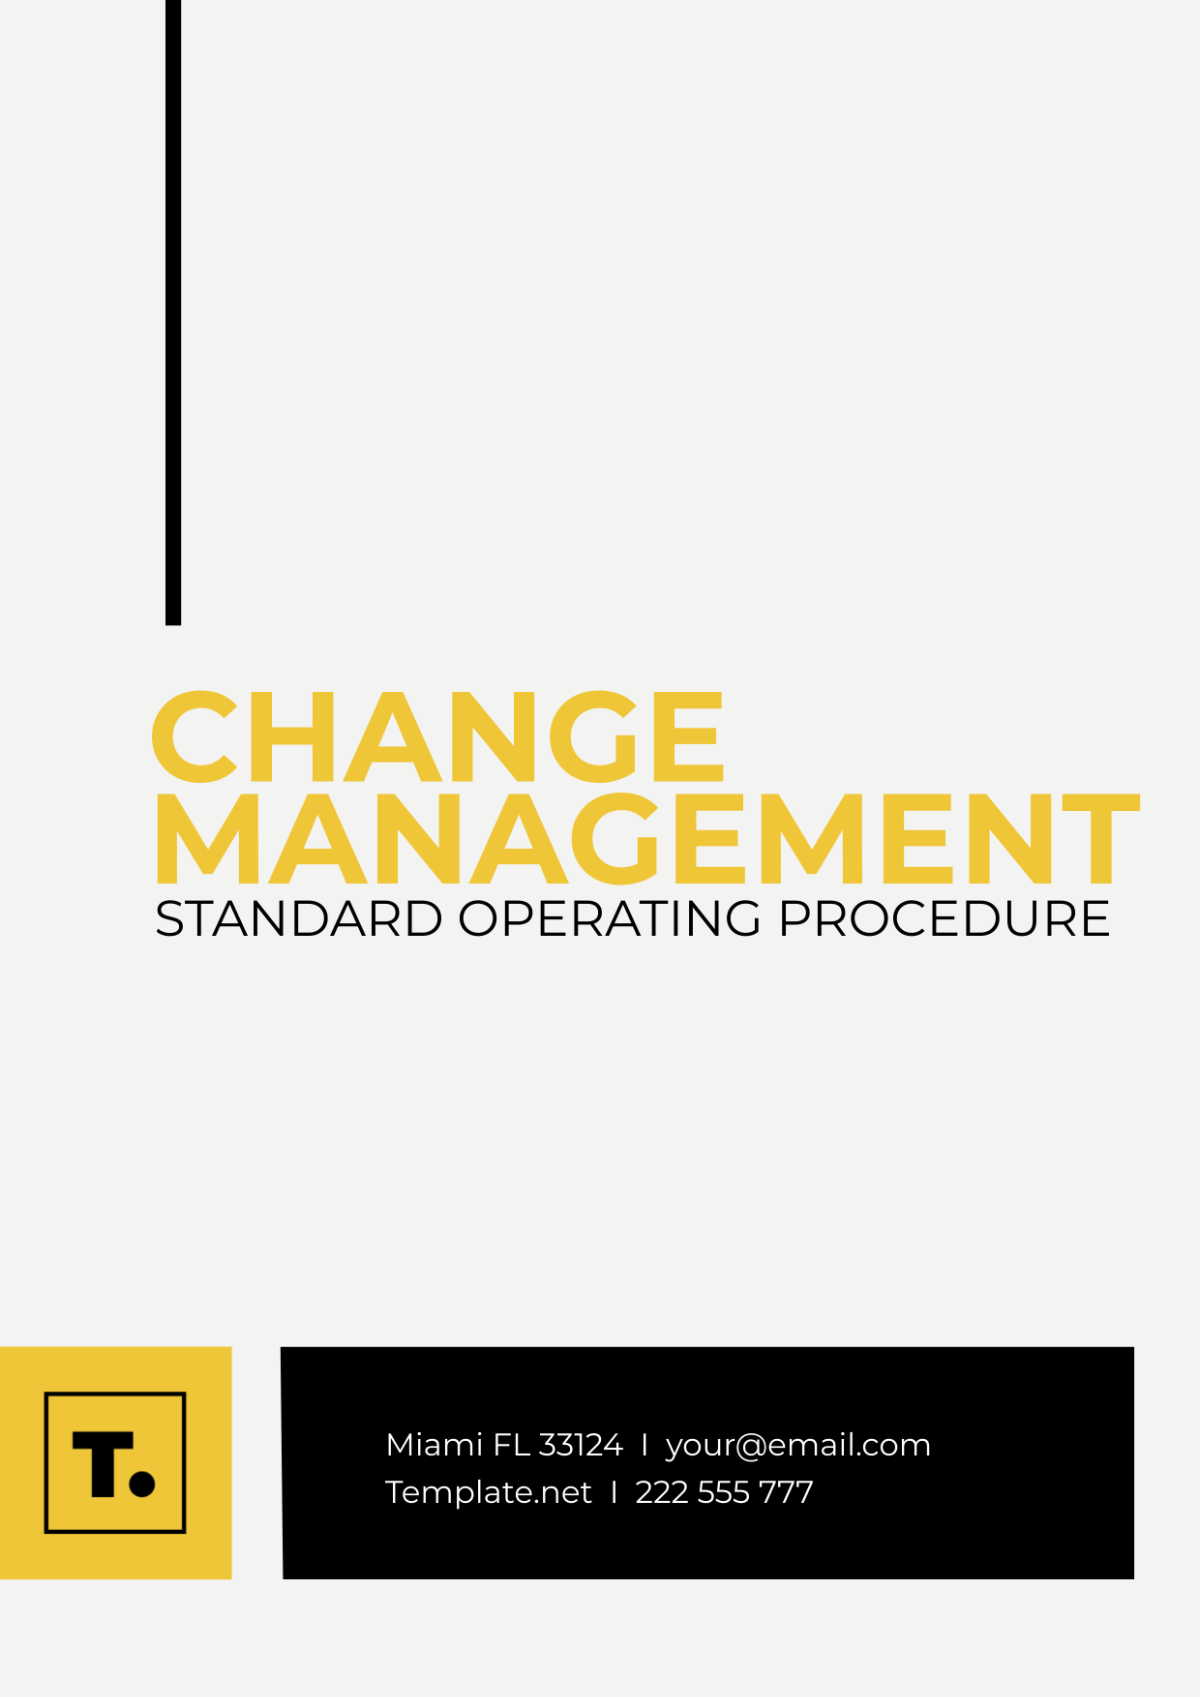 Change Management SOP Template